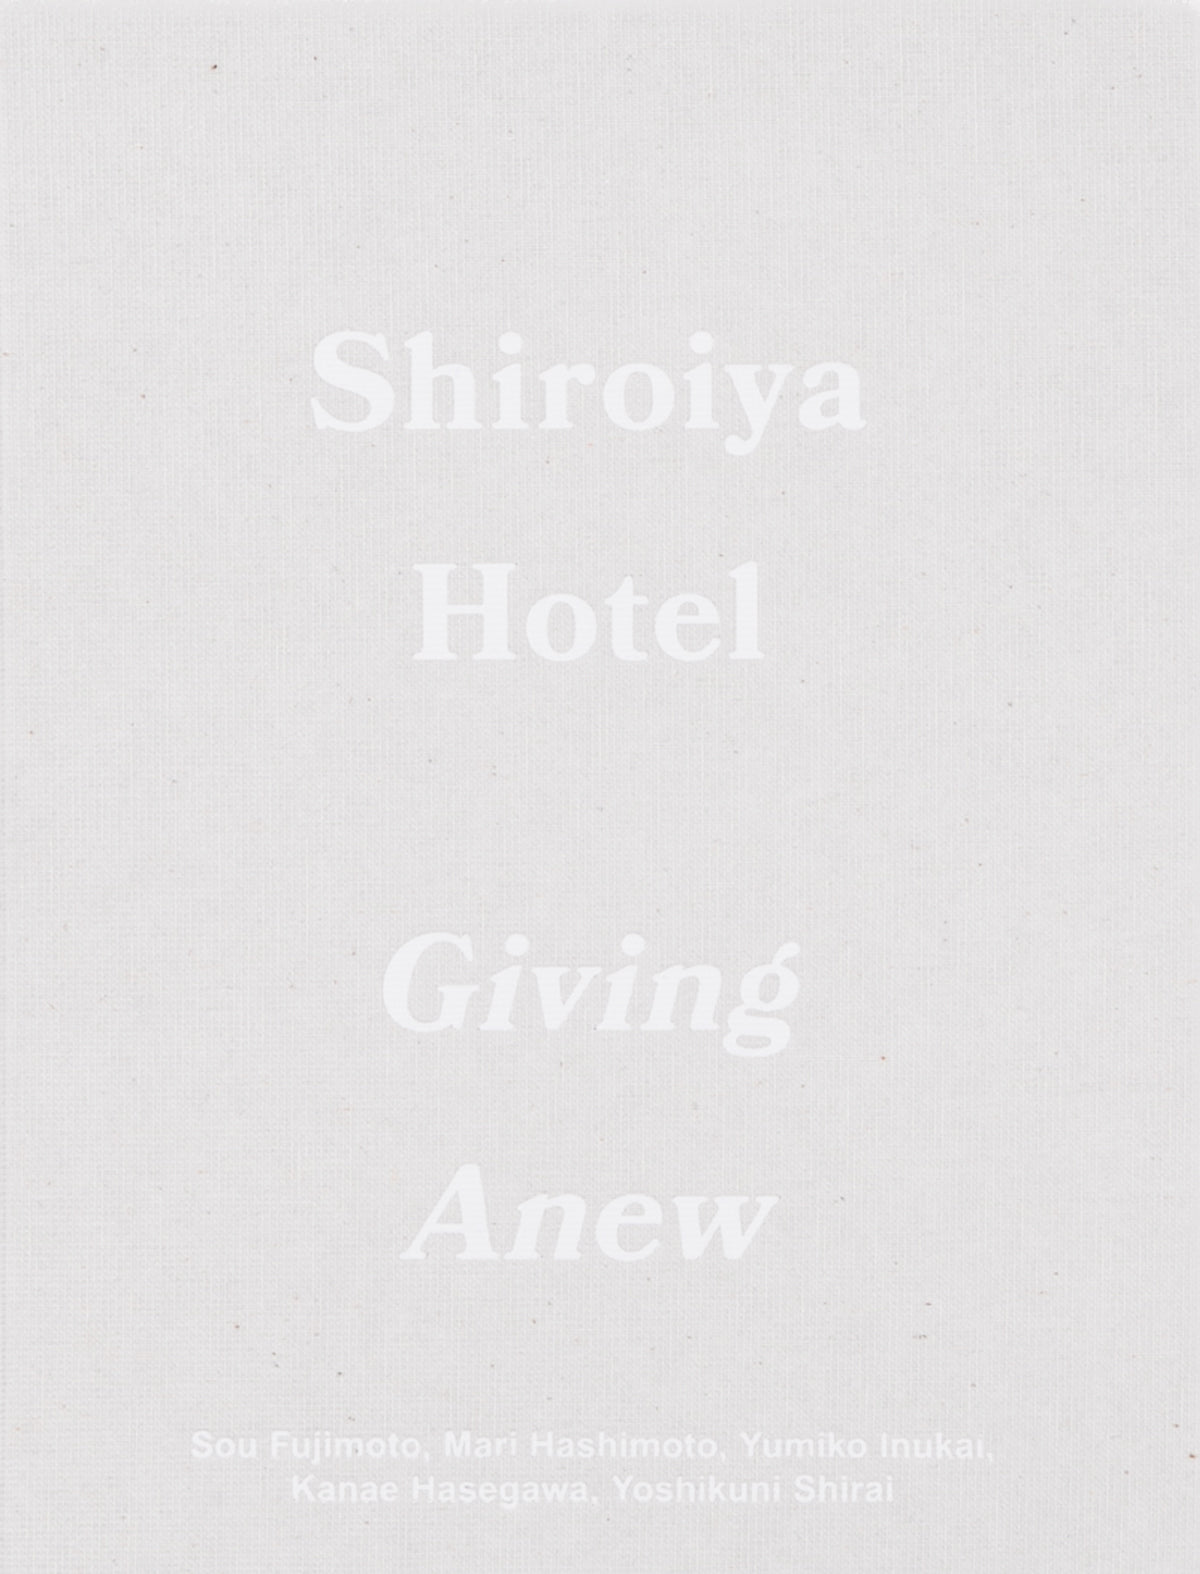 Shiroiya Hotel - Giving Anew